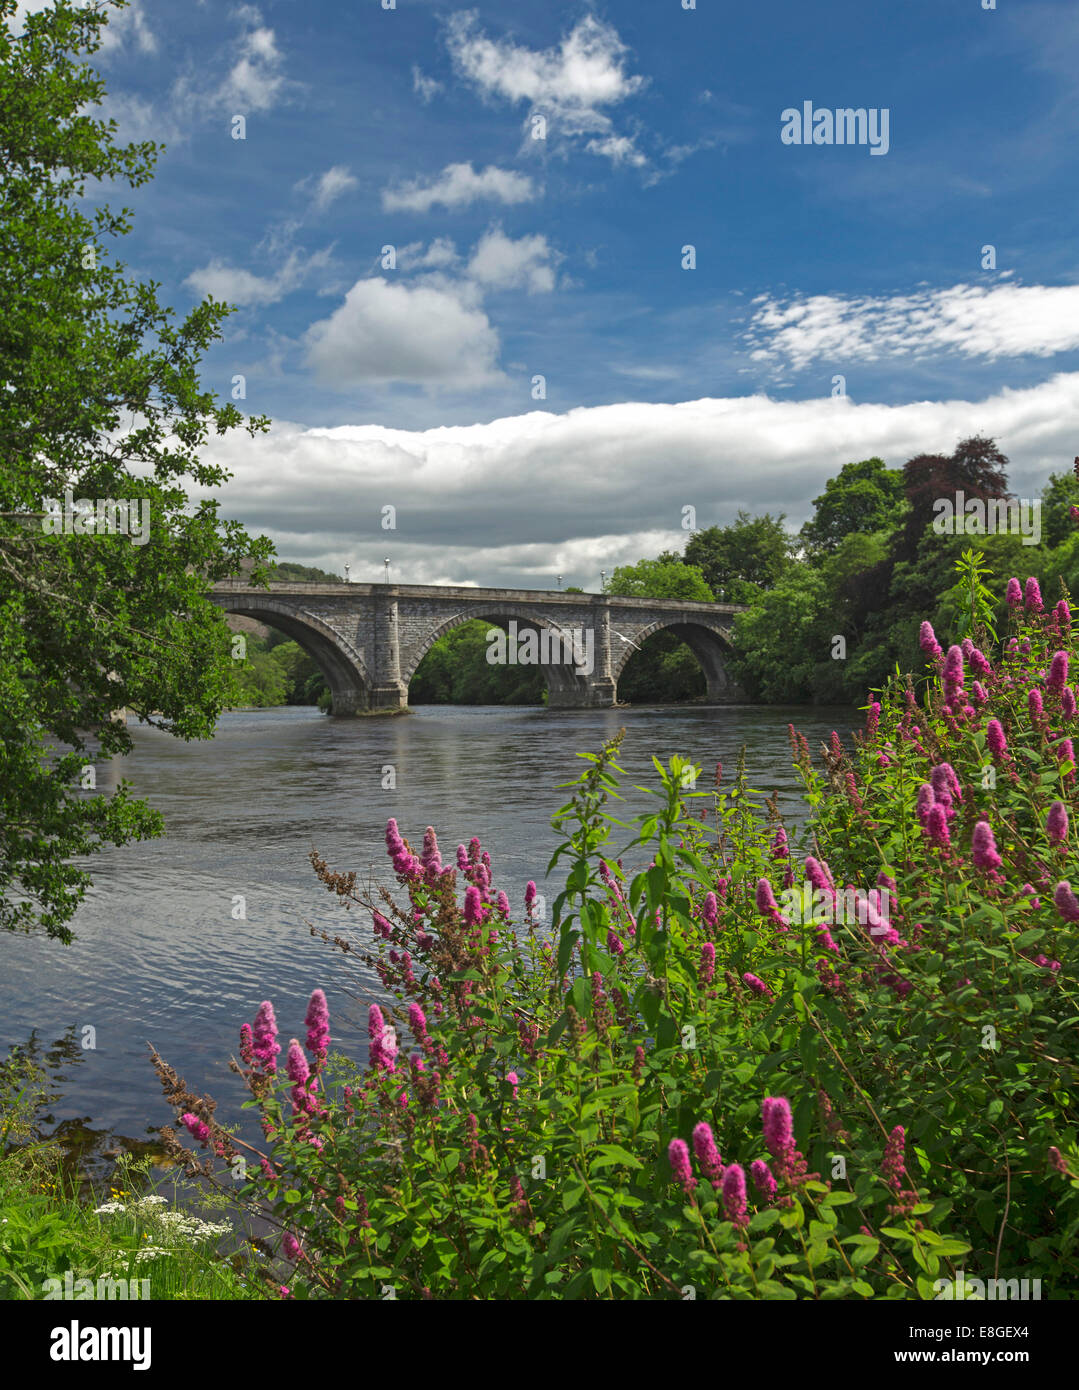 Fluß Tay & historischen 19. Jahrhundert gewölbten Brücke mit Blumen am Flussufer, blaue Himmel spiegelt sich im Wasser bei Dunkeld, Scotlland Stockfoto